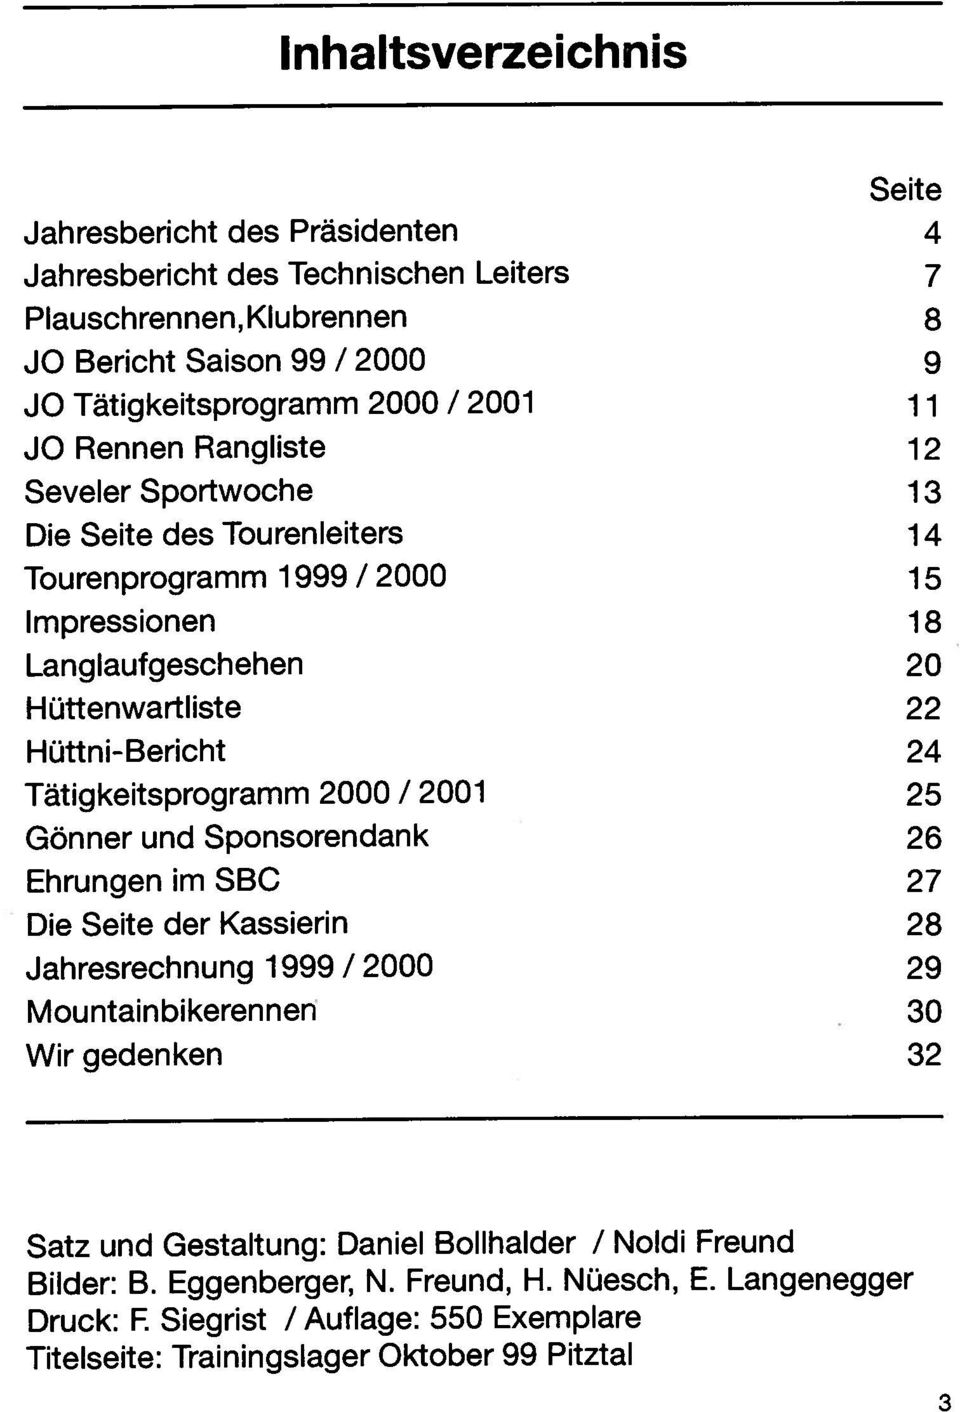 26 Hüttenwartliste 22 Tätigkeitsprogramm 2000 / 2001 25 Inhaltsverzeichnis Titelseite: Trainingslager Oktober 99 Pitztal Bilder: 8. Eggenberger N. Freund, H. Nüesch, E.